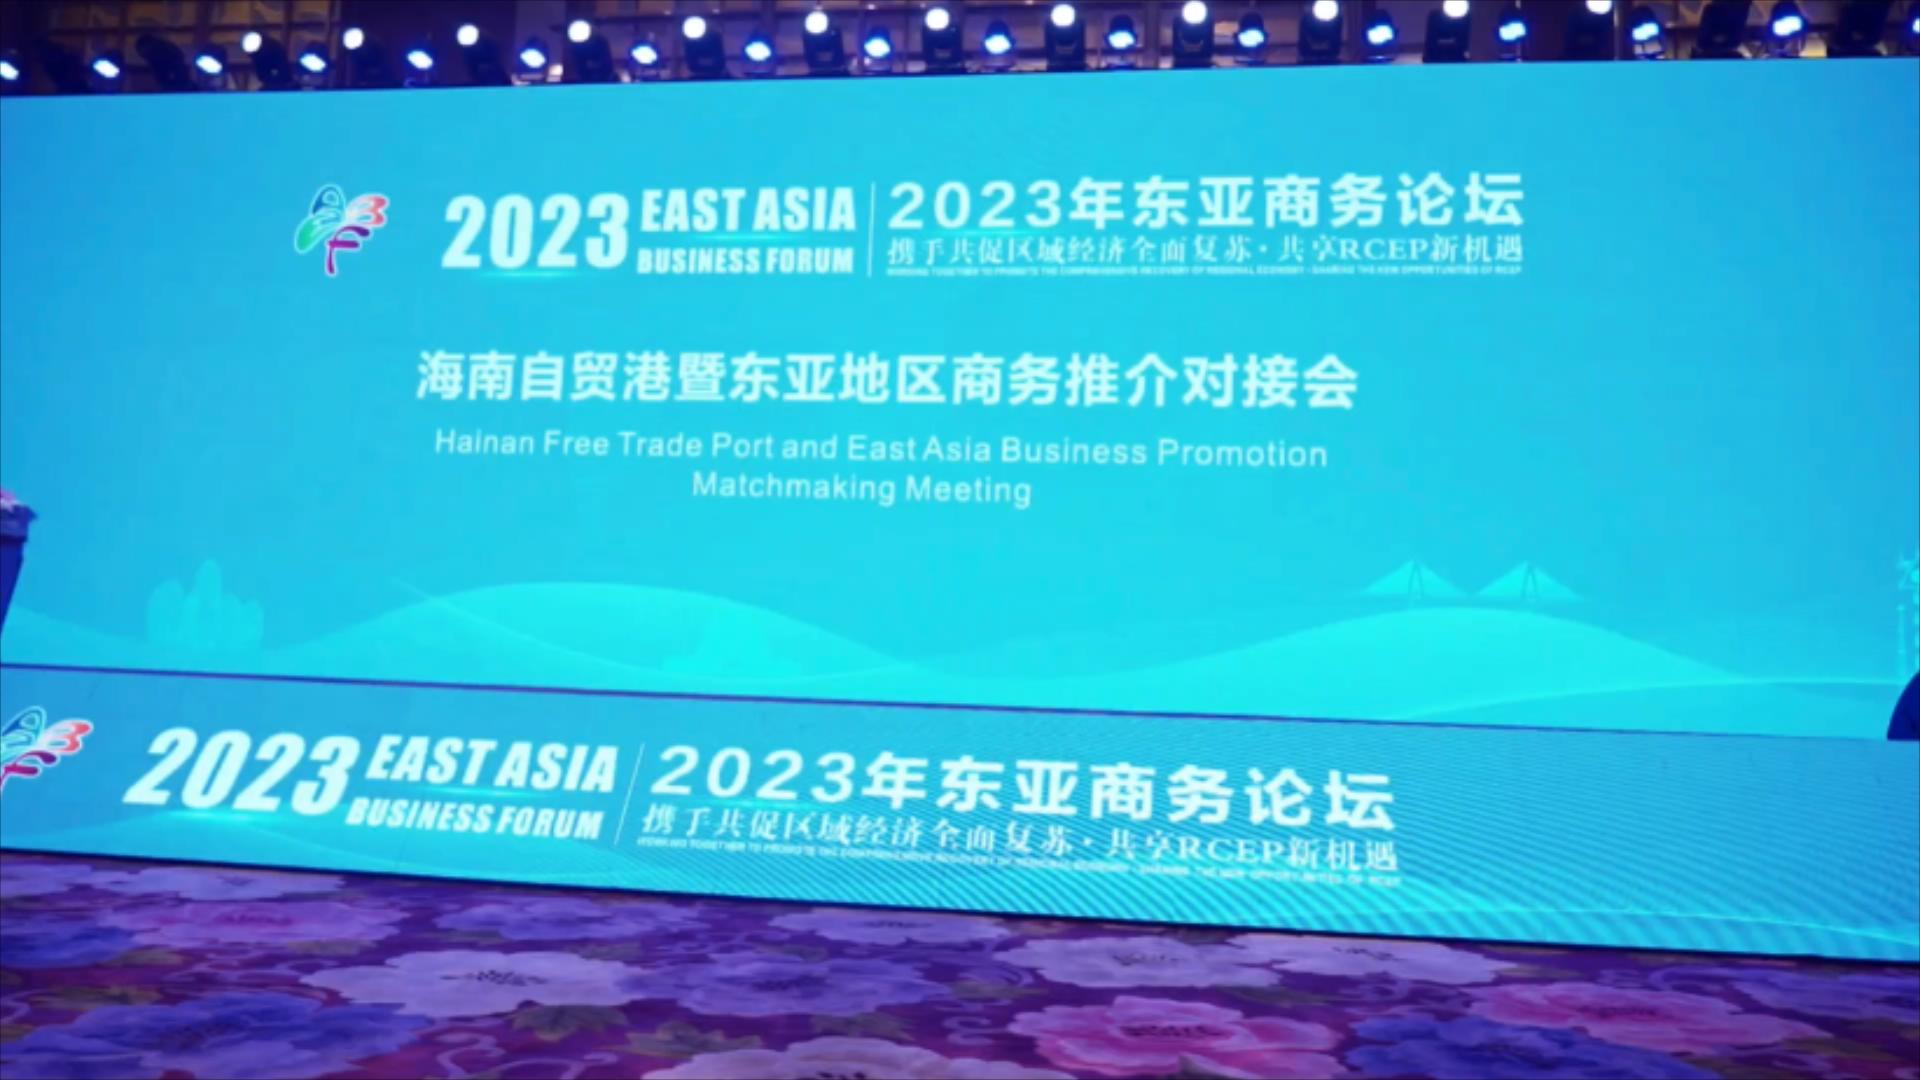 2023年東亞商務論壇落幕 七大重要成果匯總